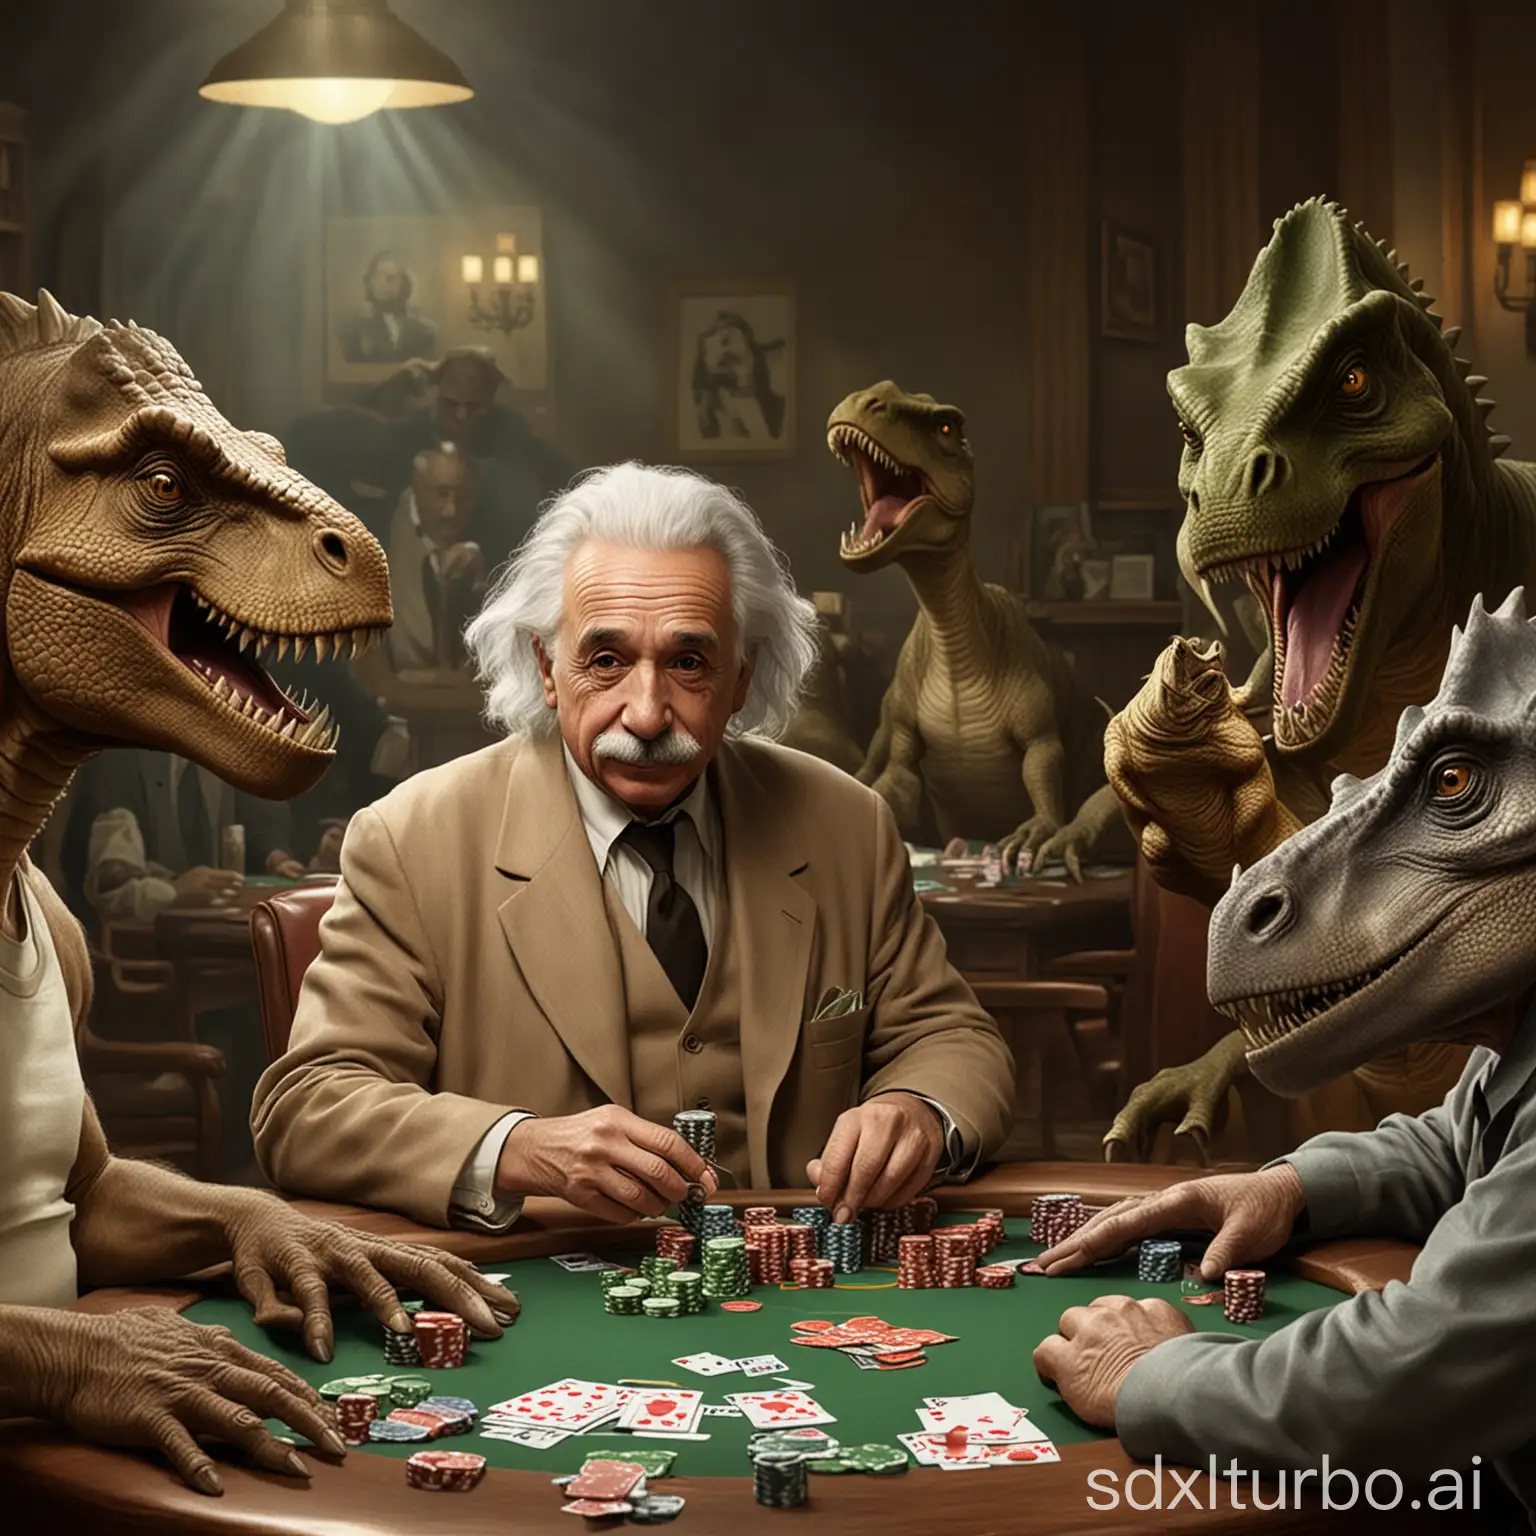 Albert Einstein plays poker with dinosaurs